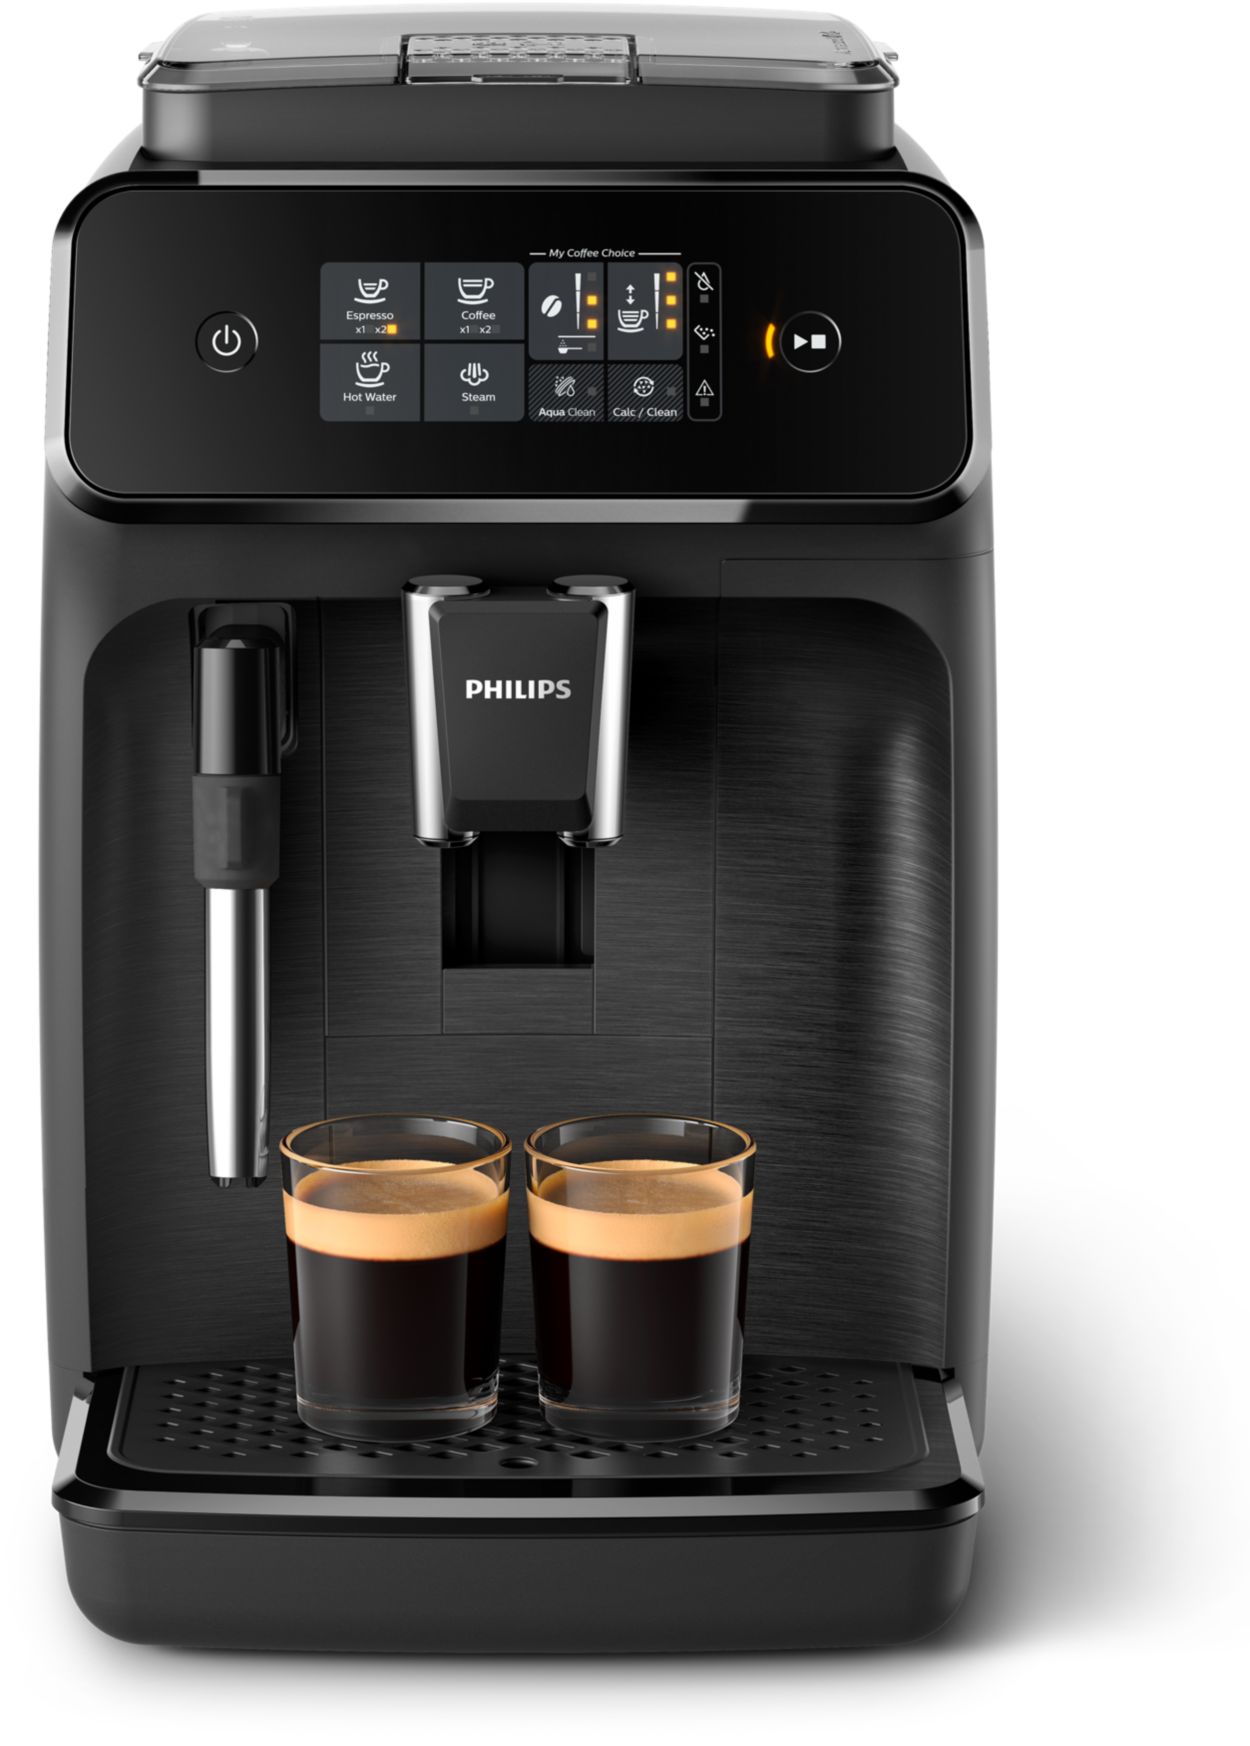  Philips Serie 1200 Máquina de café expreso totalmente  automática, espumador de leche clásico, 2 variedades de café, pantalla  táctil intuitiva, molinillo 100% de cerámica, filtro AquaClean, sello de  aroma, negro (EP1220/04) 